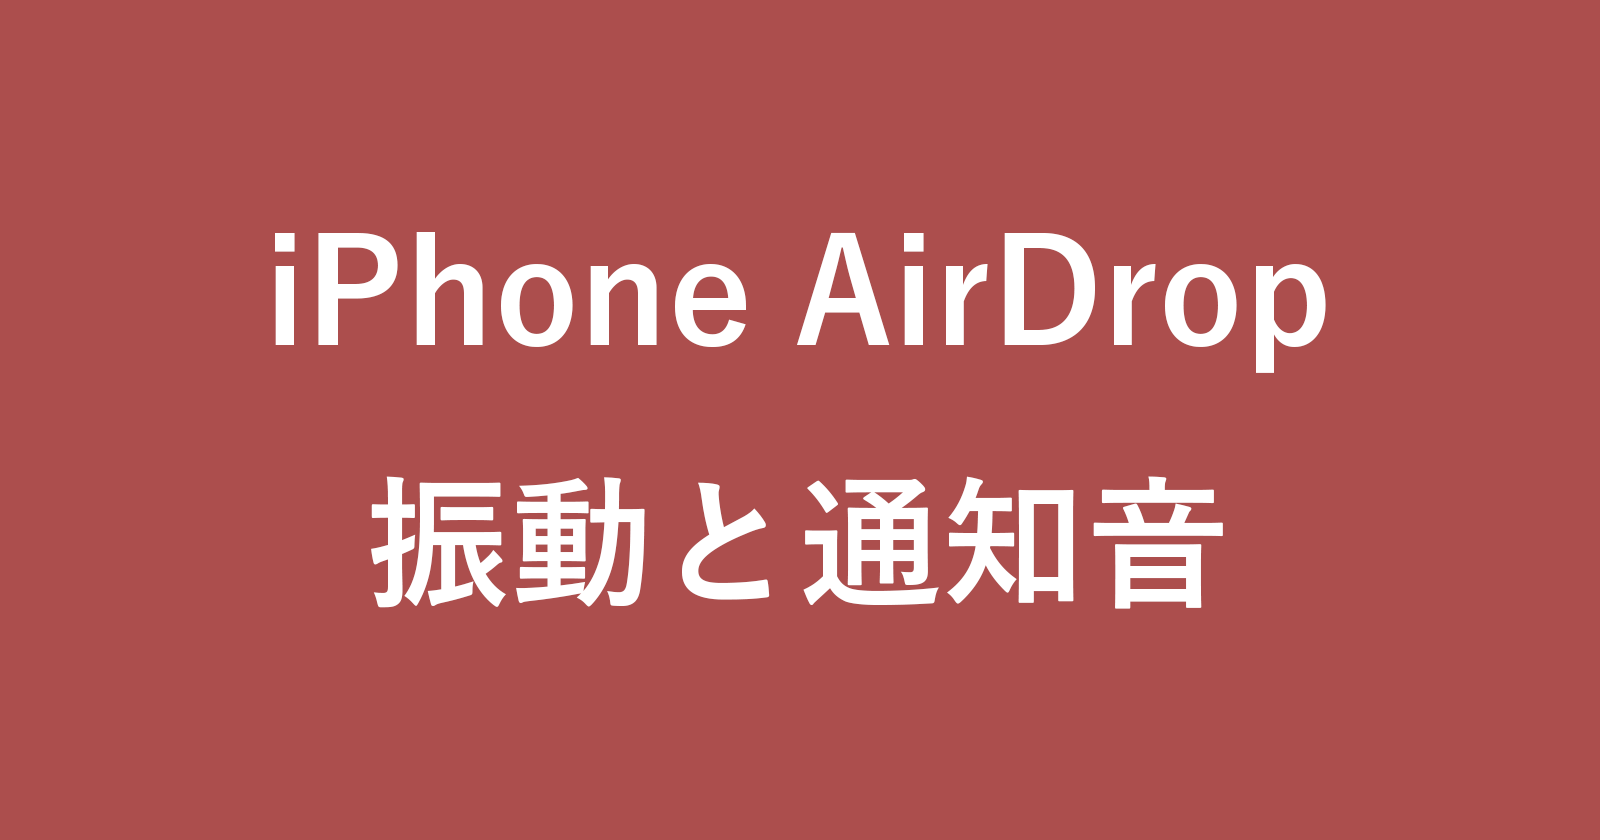 iphone airdrop sound